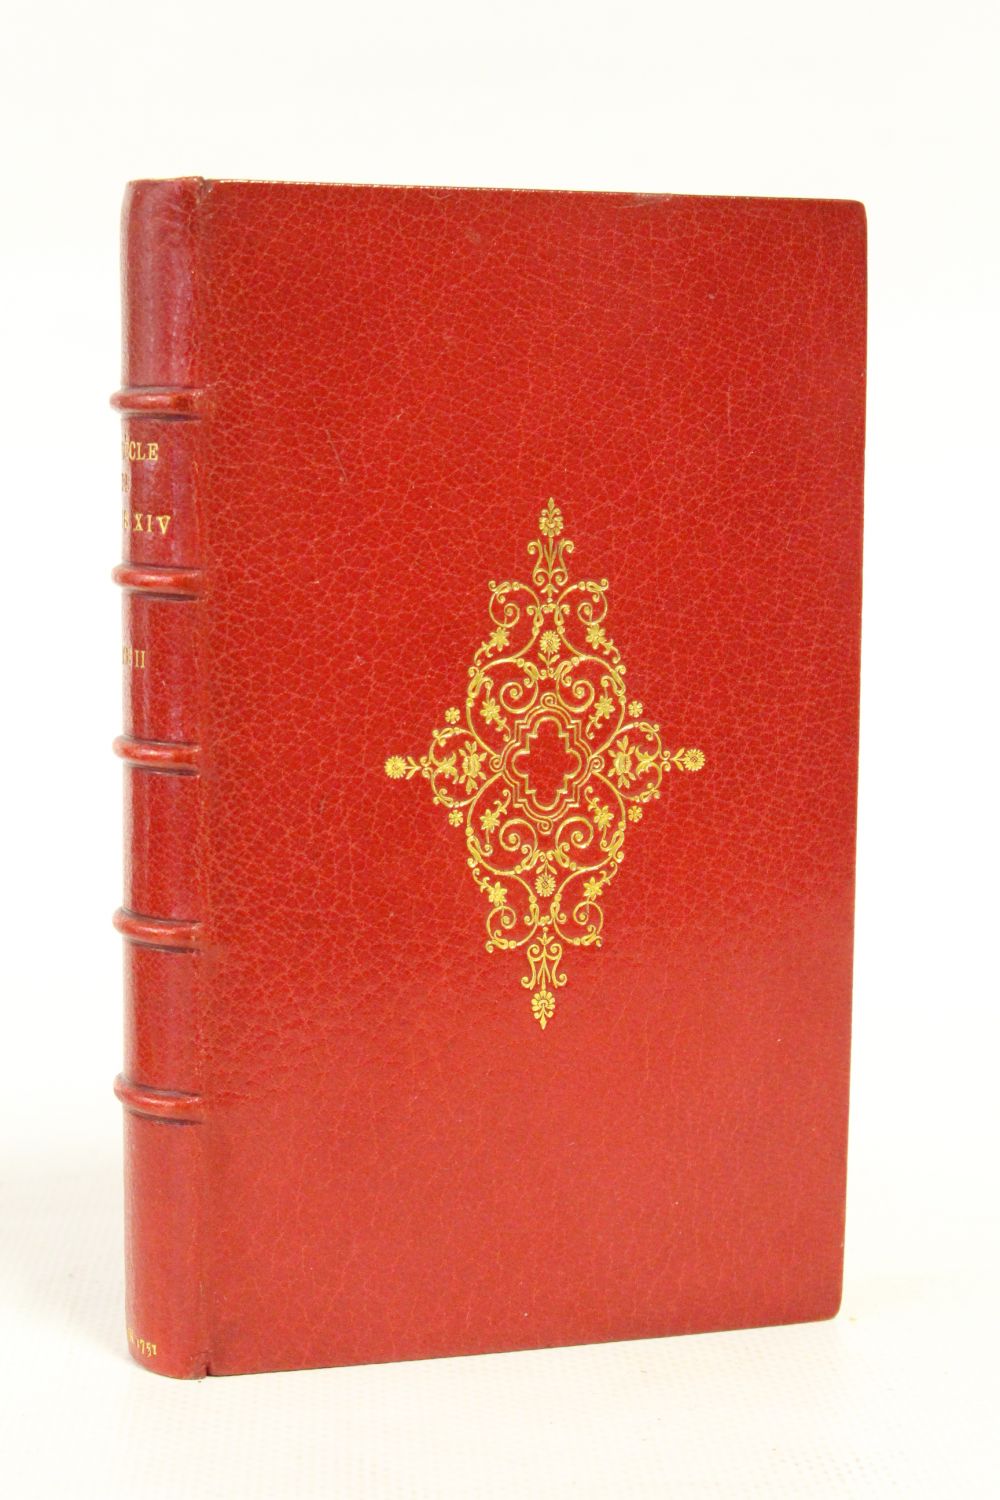 VOLTAIRE : Le siècle de Louis XIV - First edition 